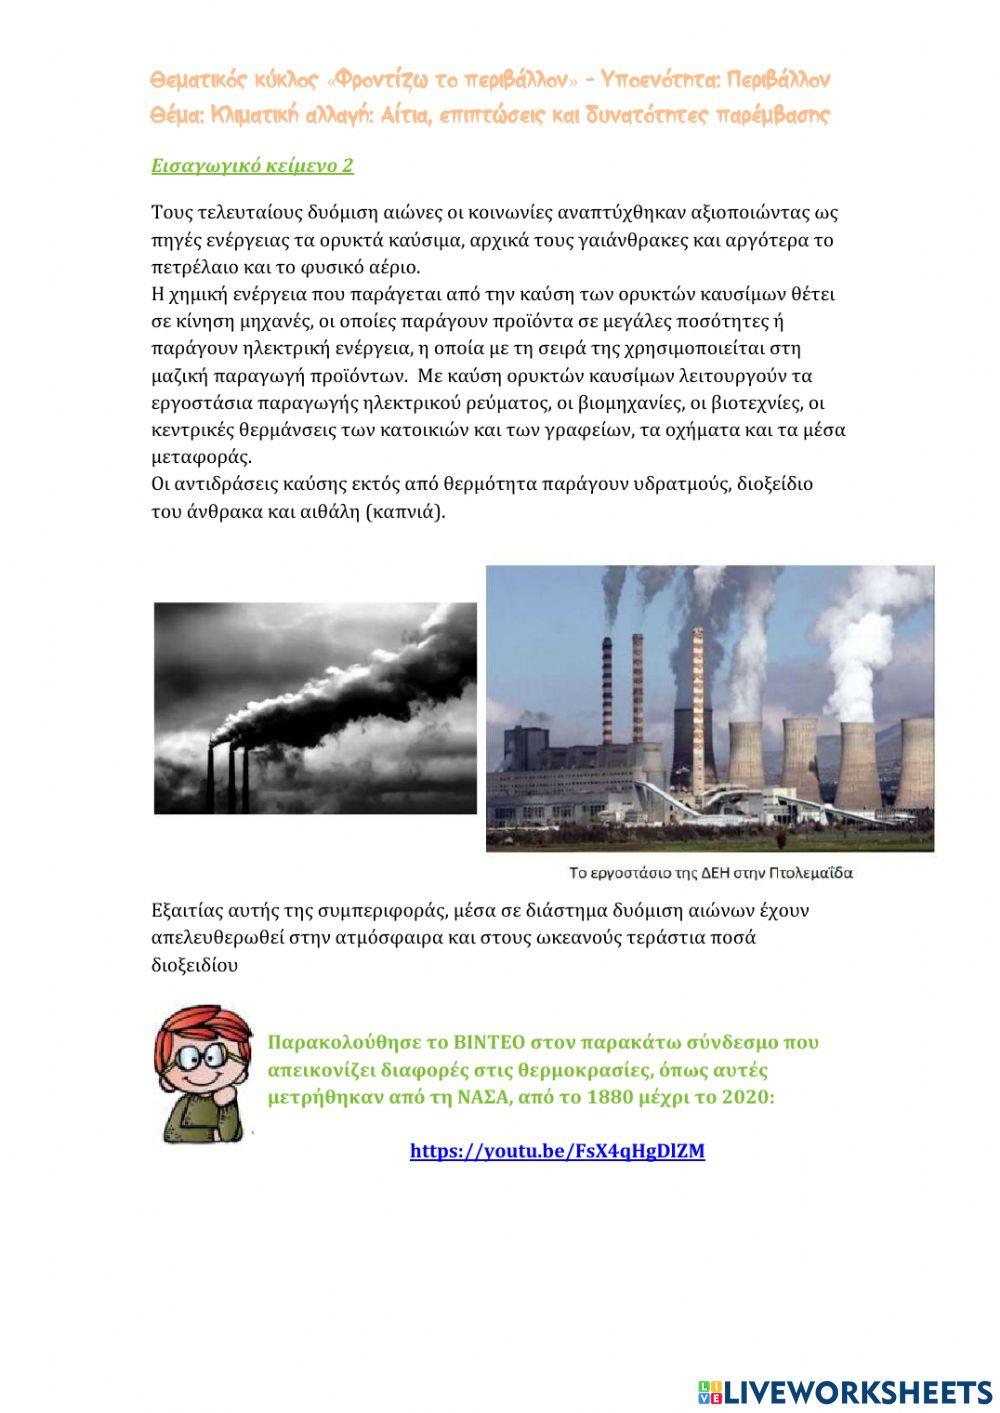 Κλιματική αλλαγή: Αίτια, επιπτώσεις και δυνατότητες παρέμβασης -1